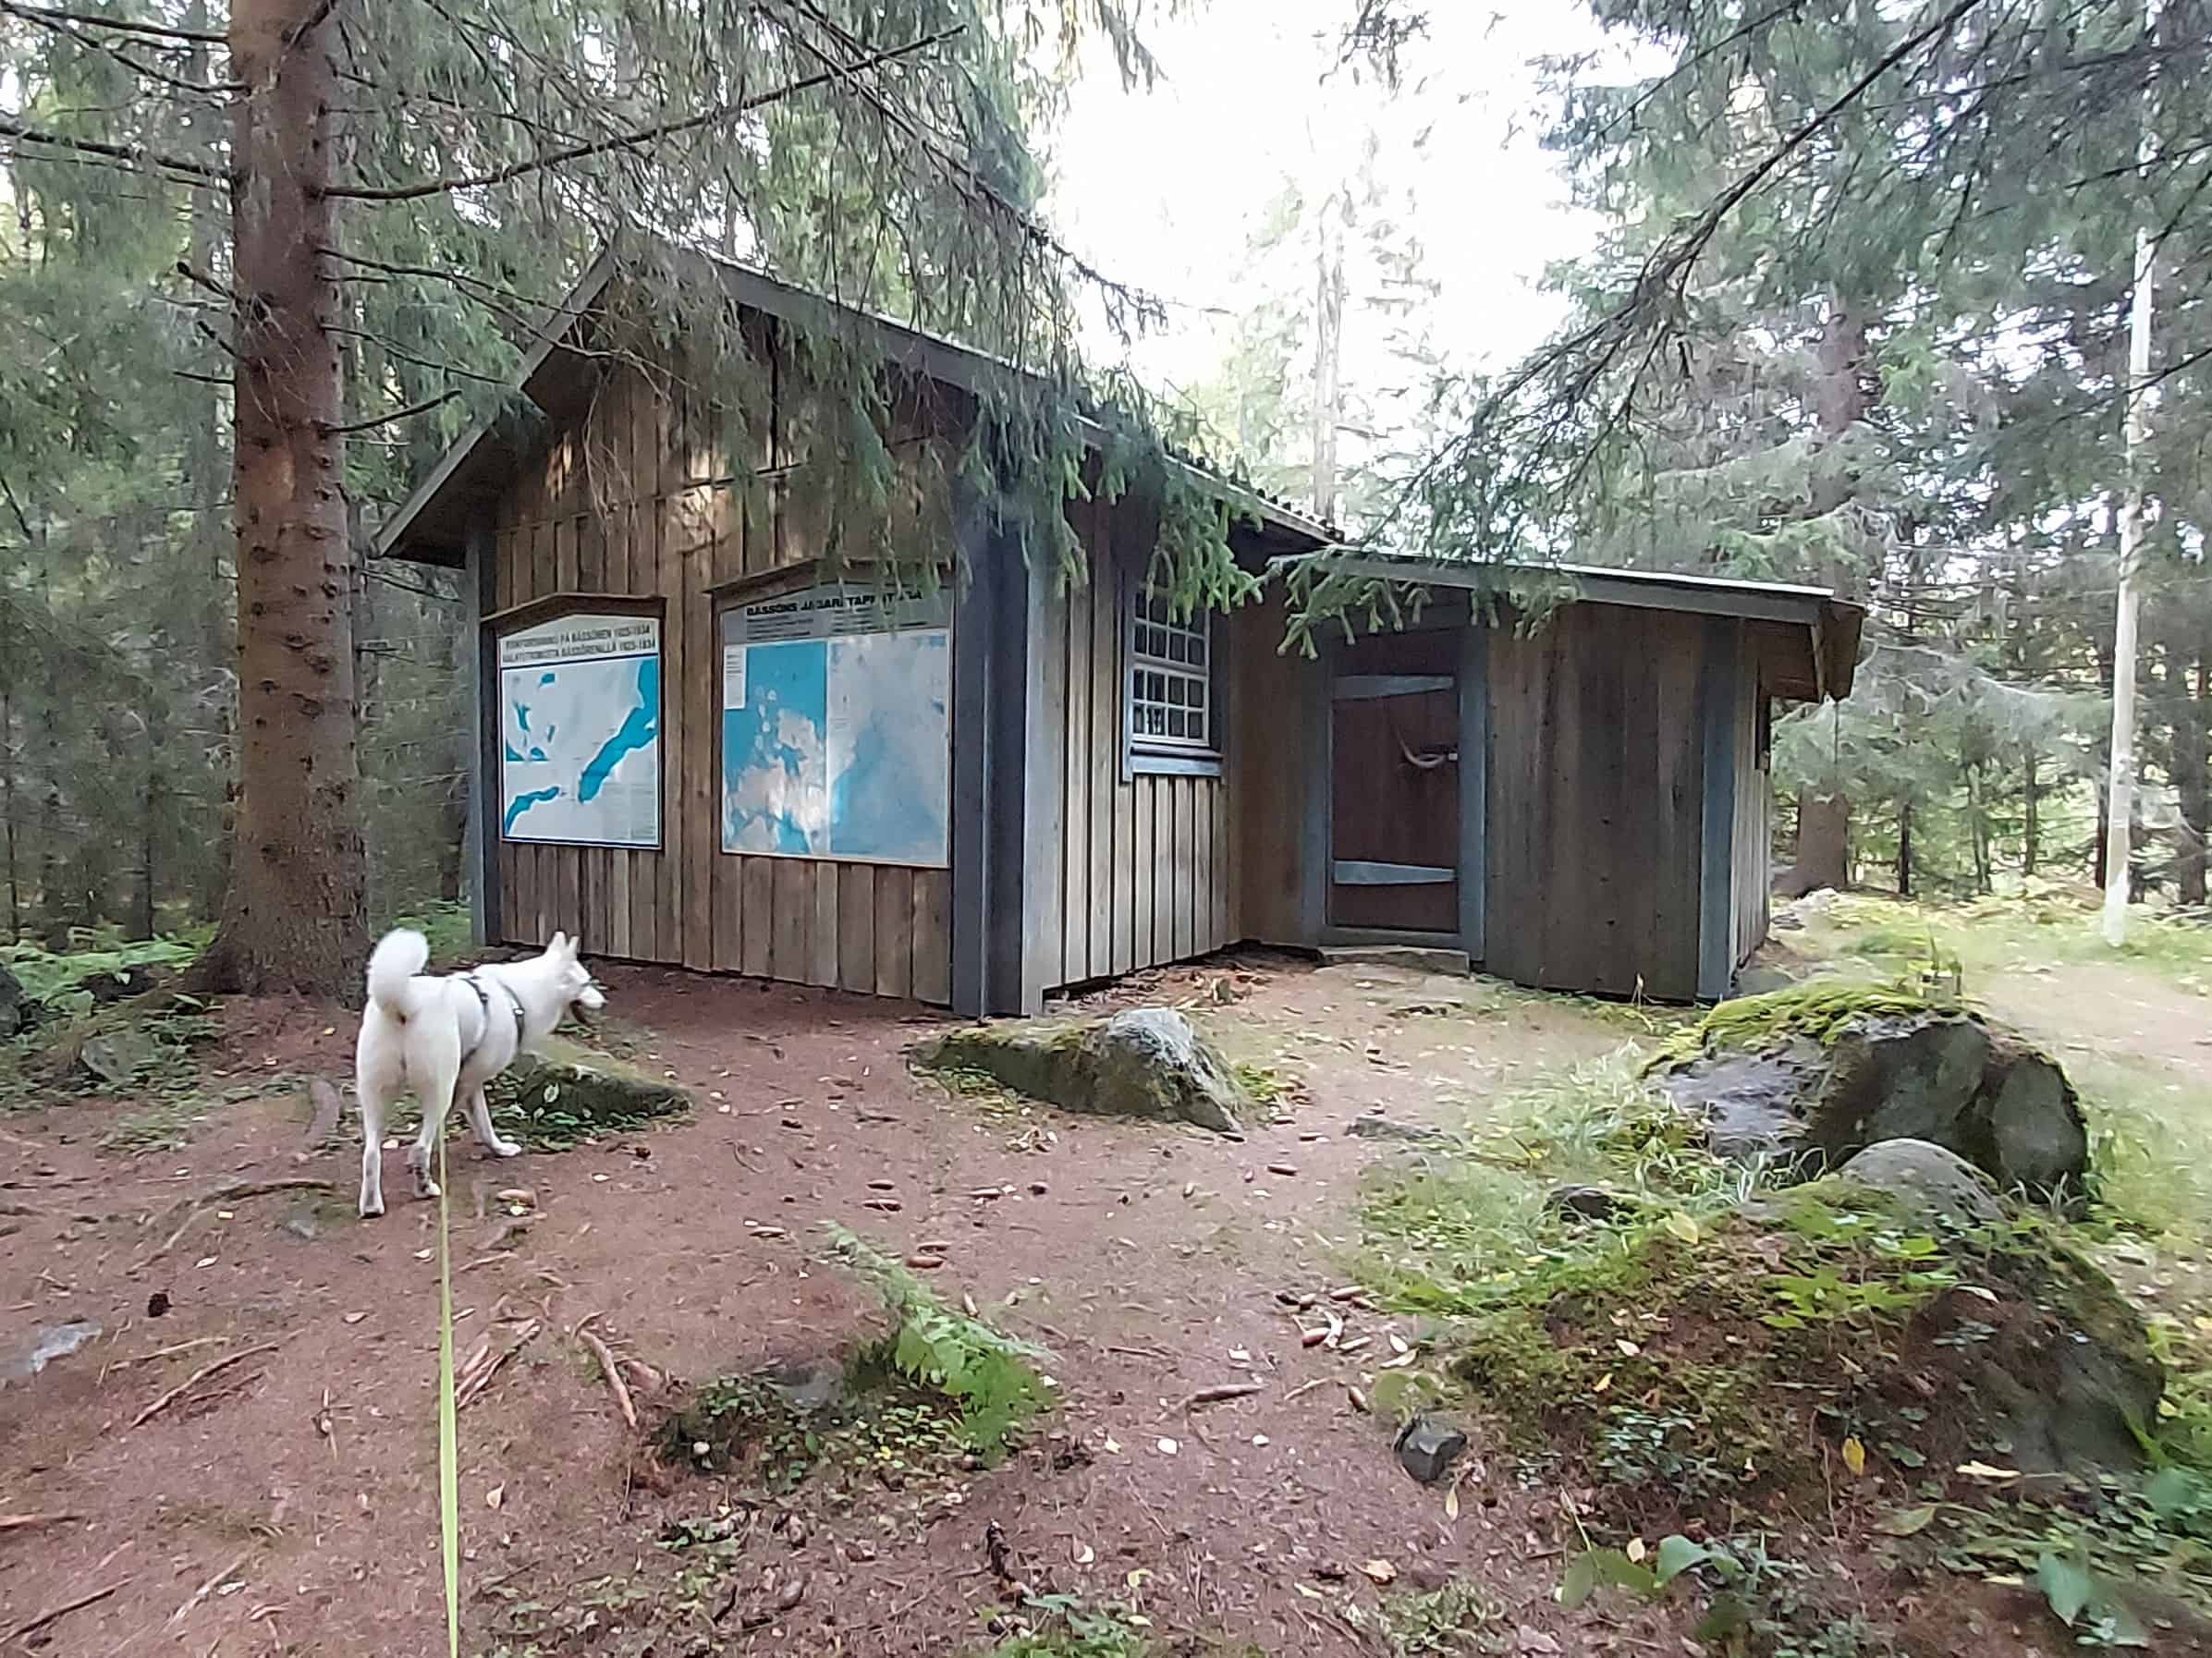 Jääkärietappitupa sijaitsee metsän keskellä. Tuvan edustalla valkoinen koira.